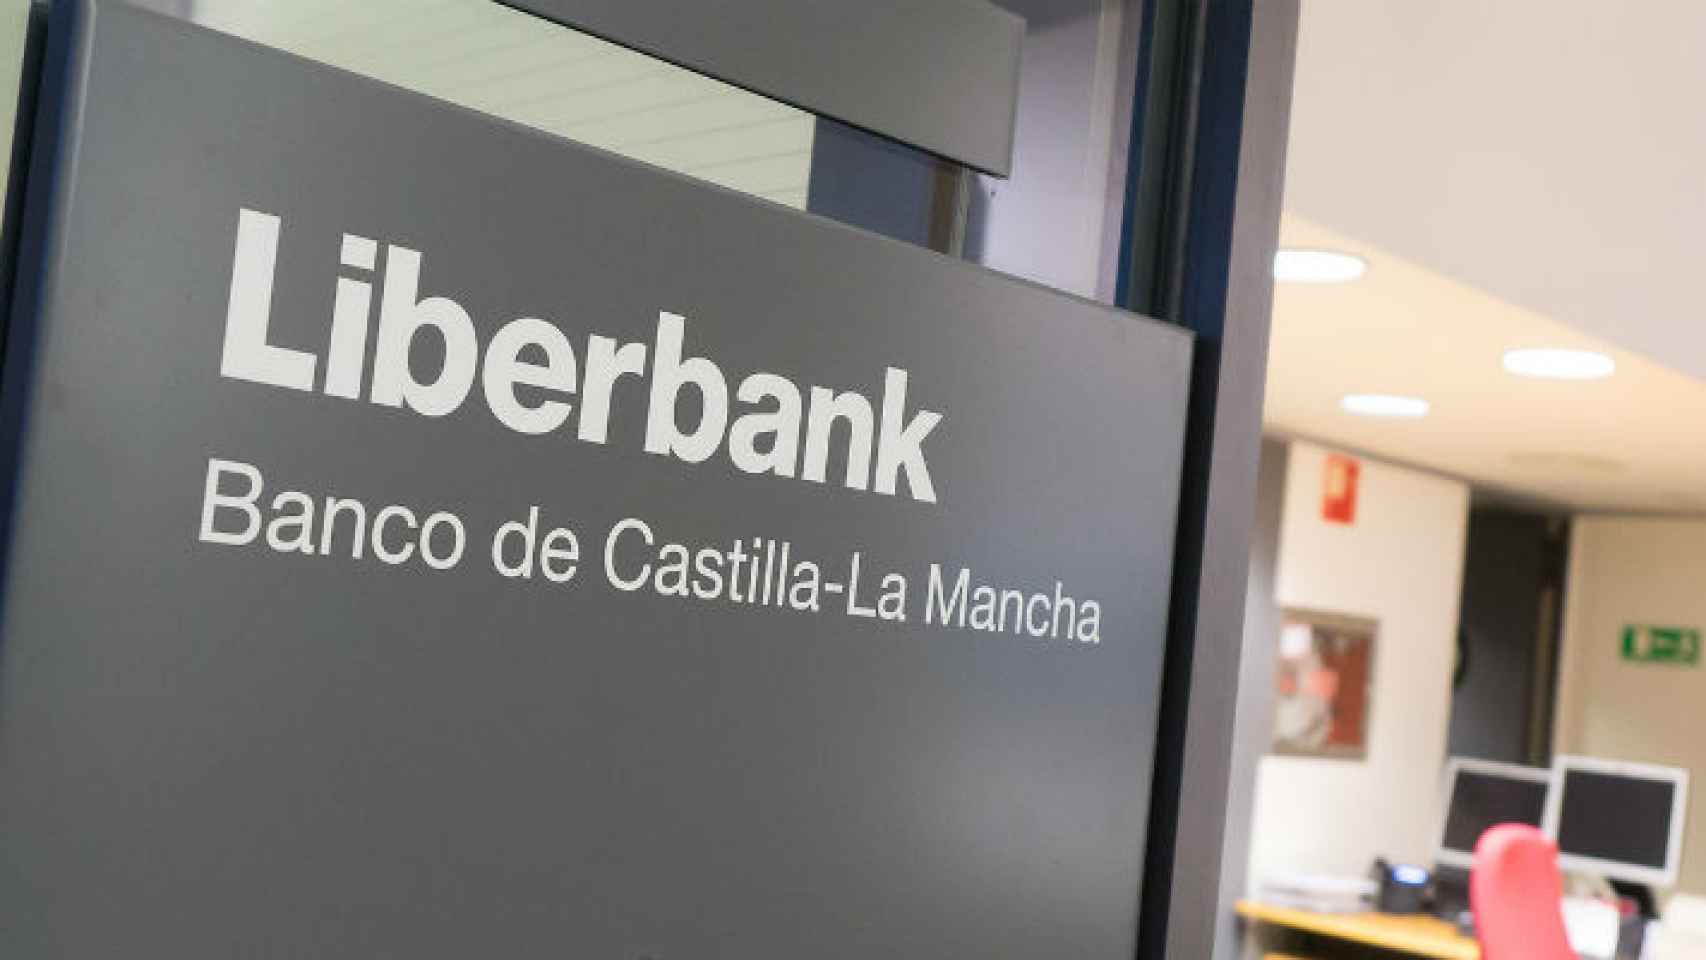 Autorizada por el Gobierno la fusión de Unicaja con Liberbank-Banco de Castilla-La Mancha